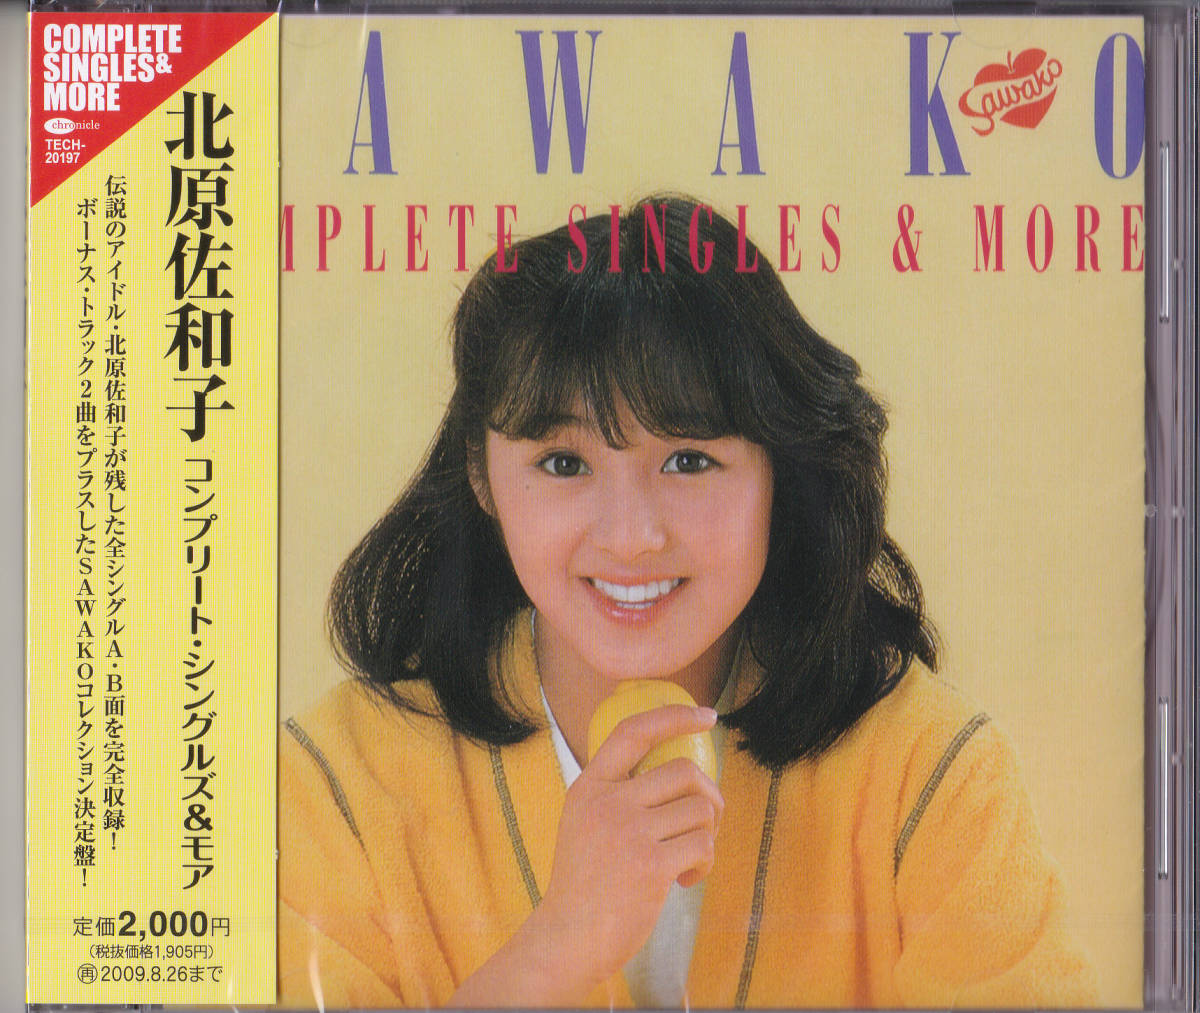 [ включая доставку быстрое решение ] нераспечатанный новый товар CD # Kitahara Sawako # [ Complete * одиночный z& moa ]